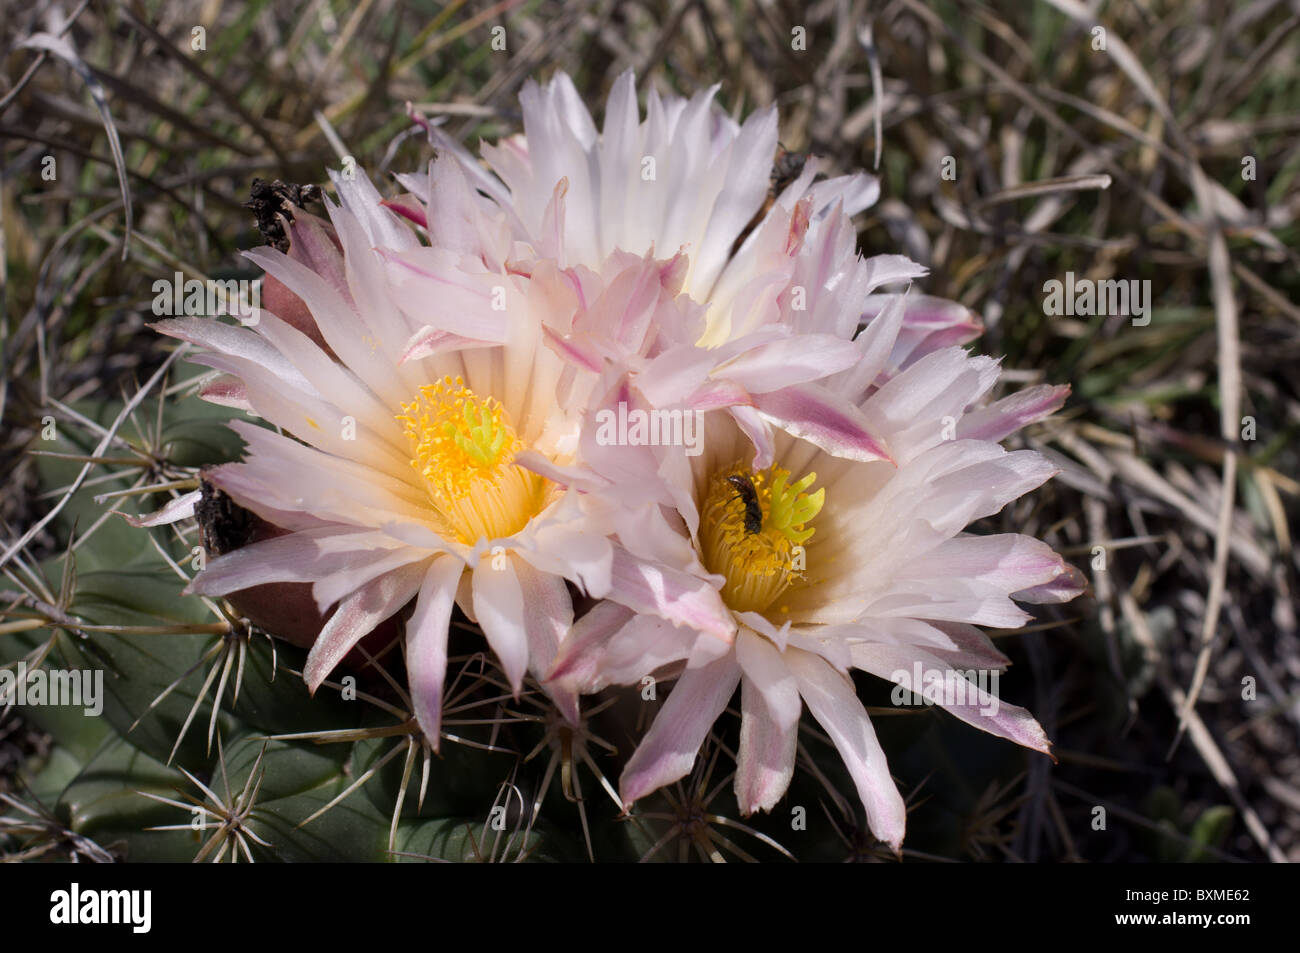 Cactus silvestres (Coryphanta Ottonis) florece durante la primavera en la zona central de México Foto de stock